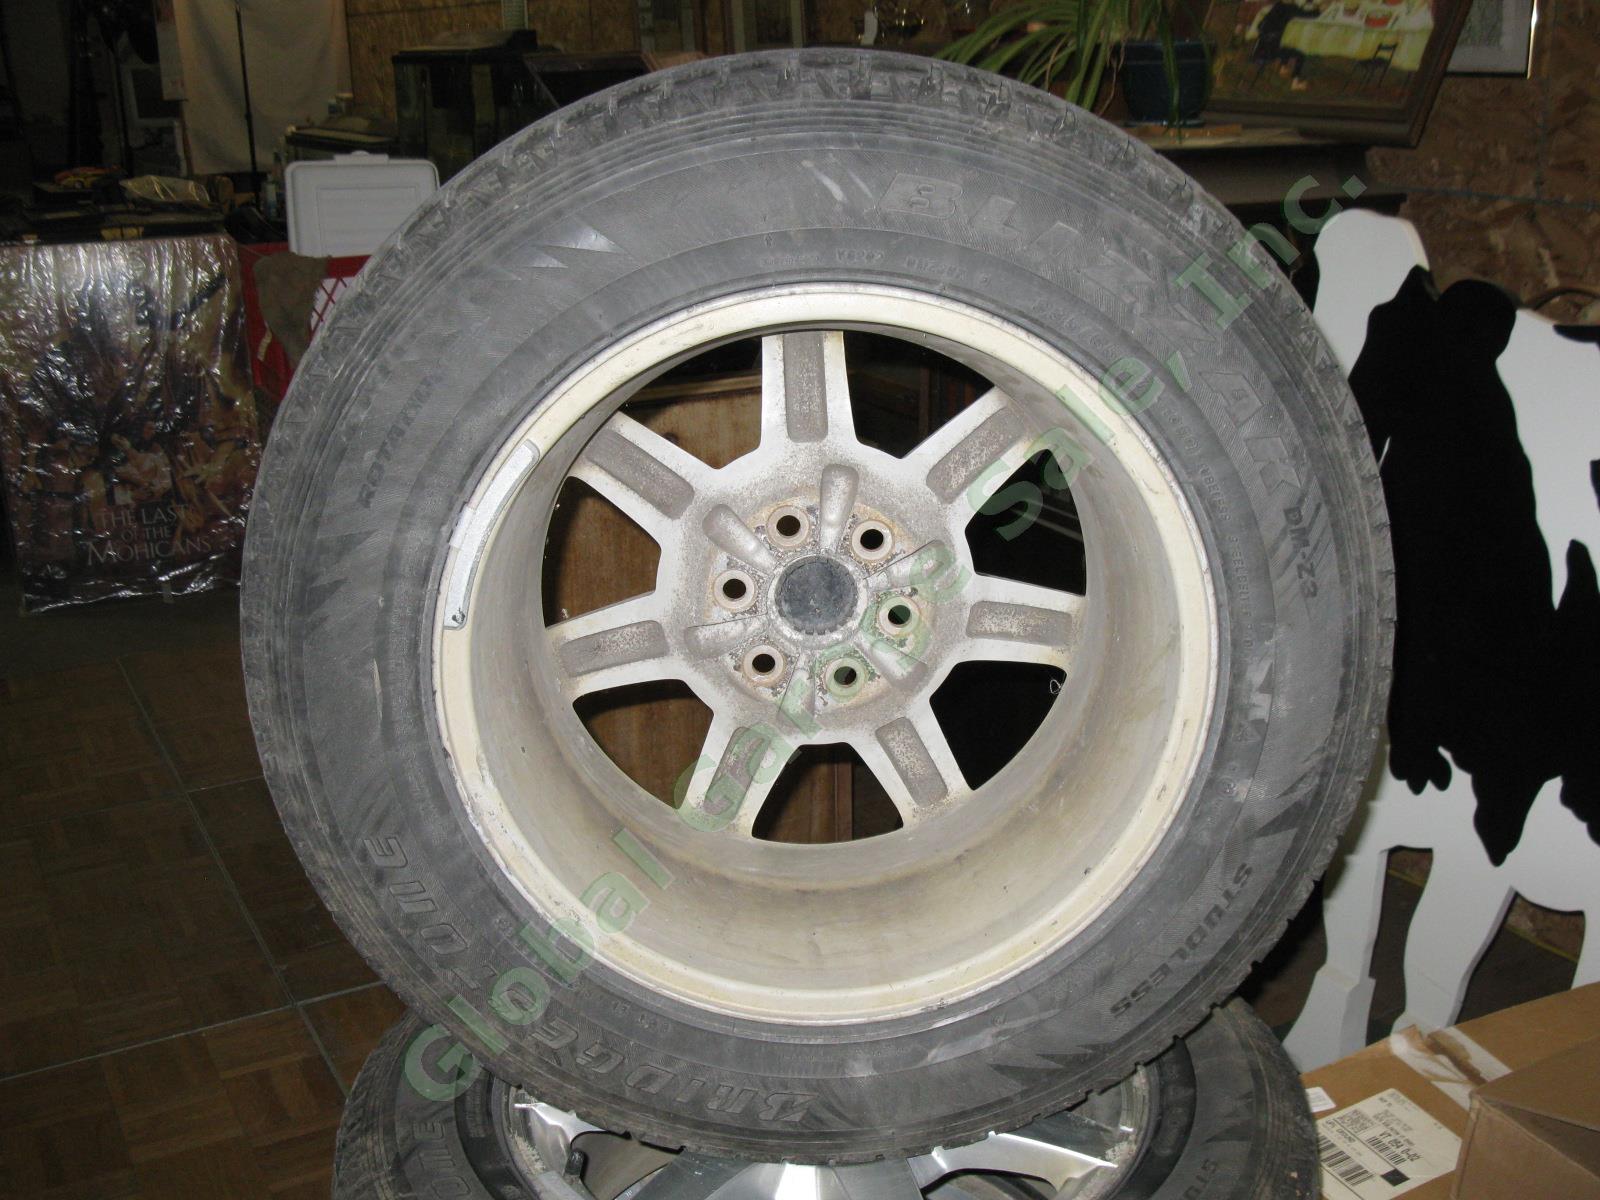 4 17"x 7.5" Rims Wheels + Bridgestone Blizzak 235/65/R17 Snow Tires Cadillac SRX 7